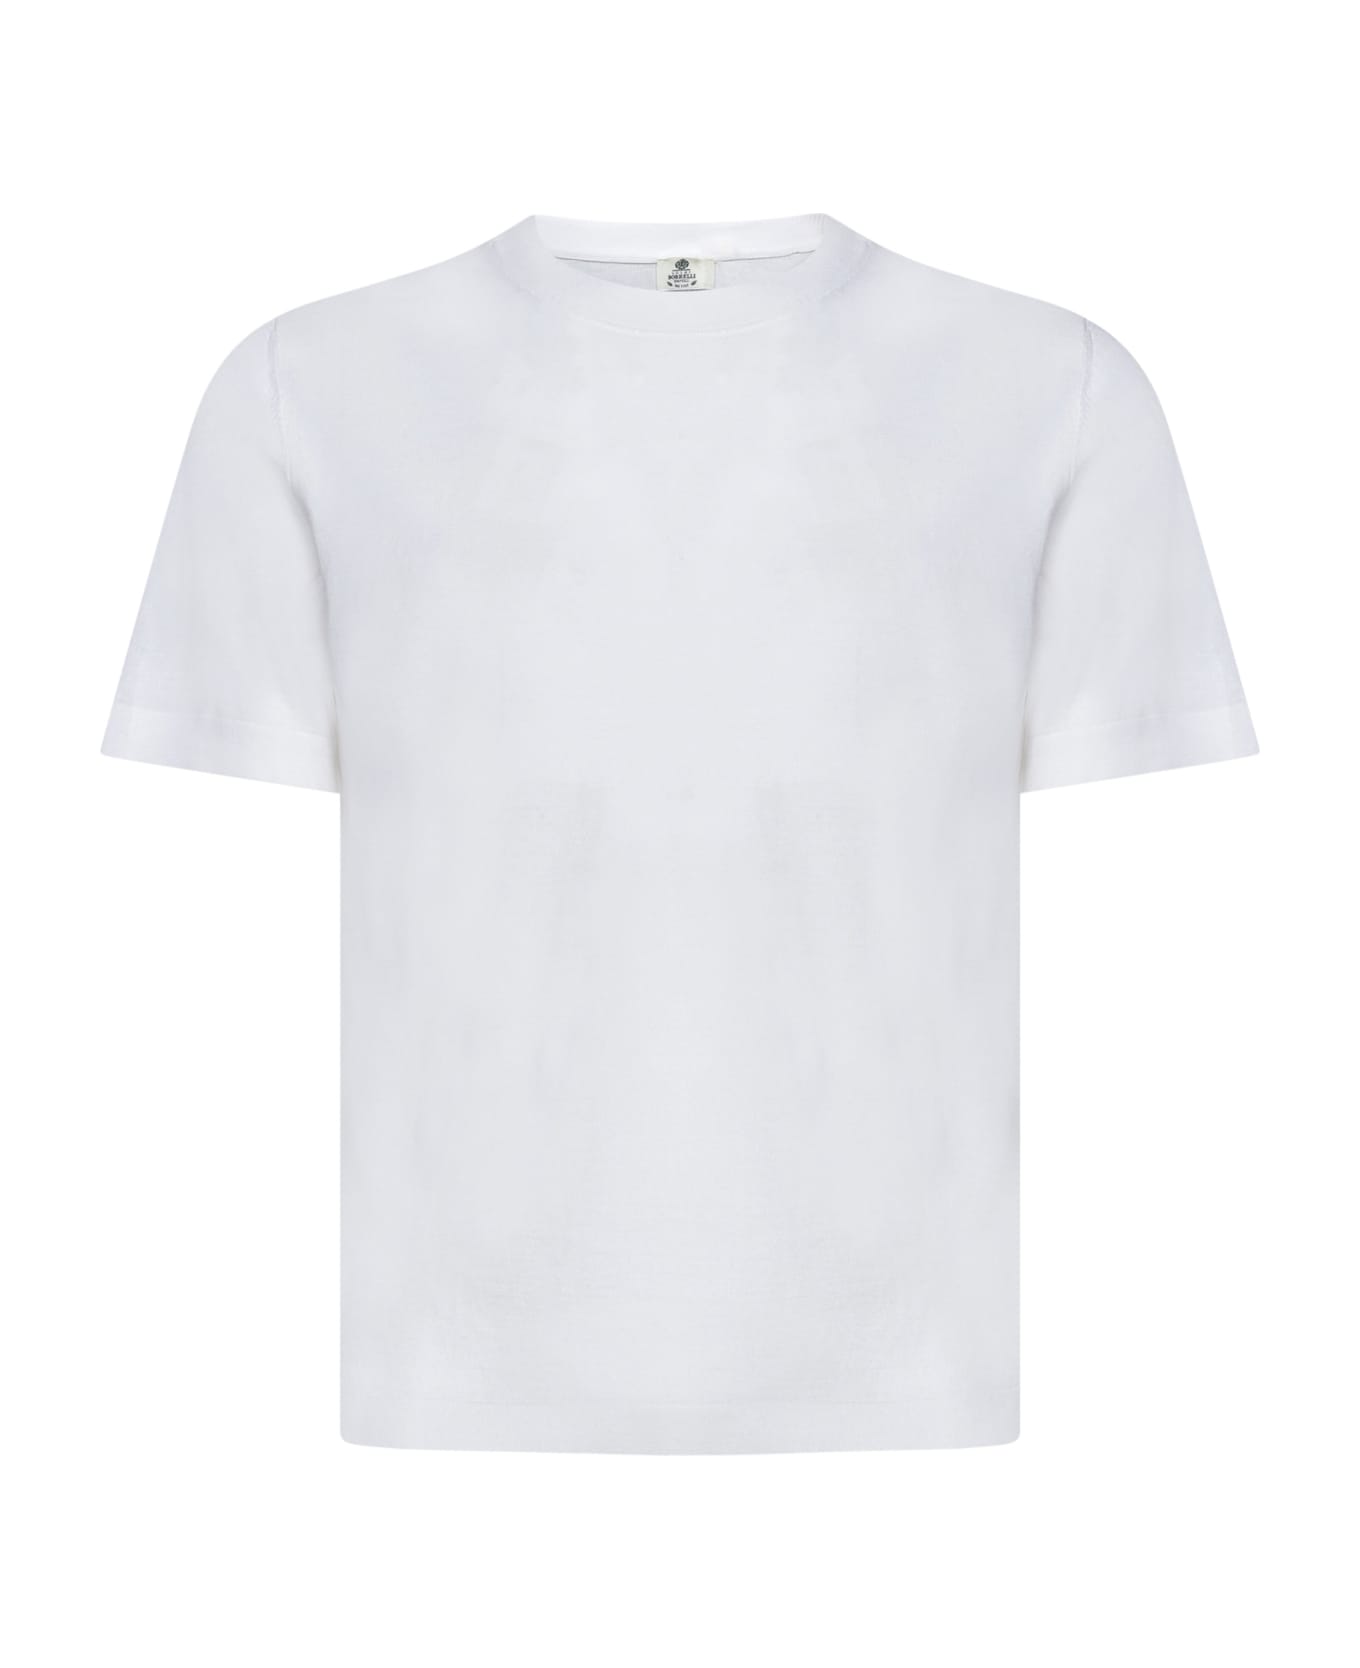 Luigi Borrelli T-shirt - White シャツ